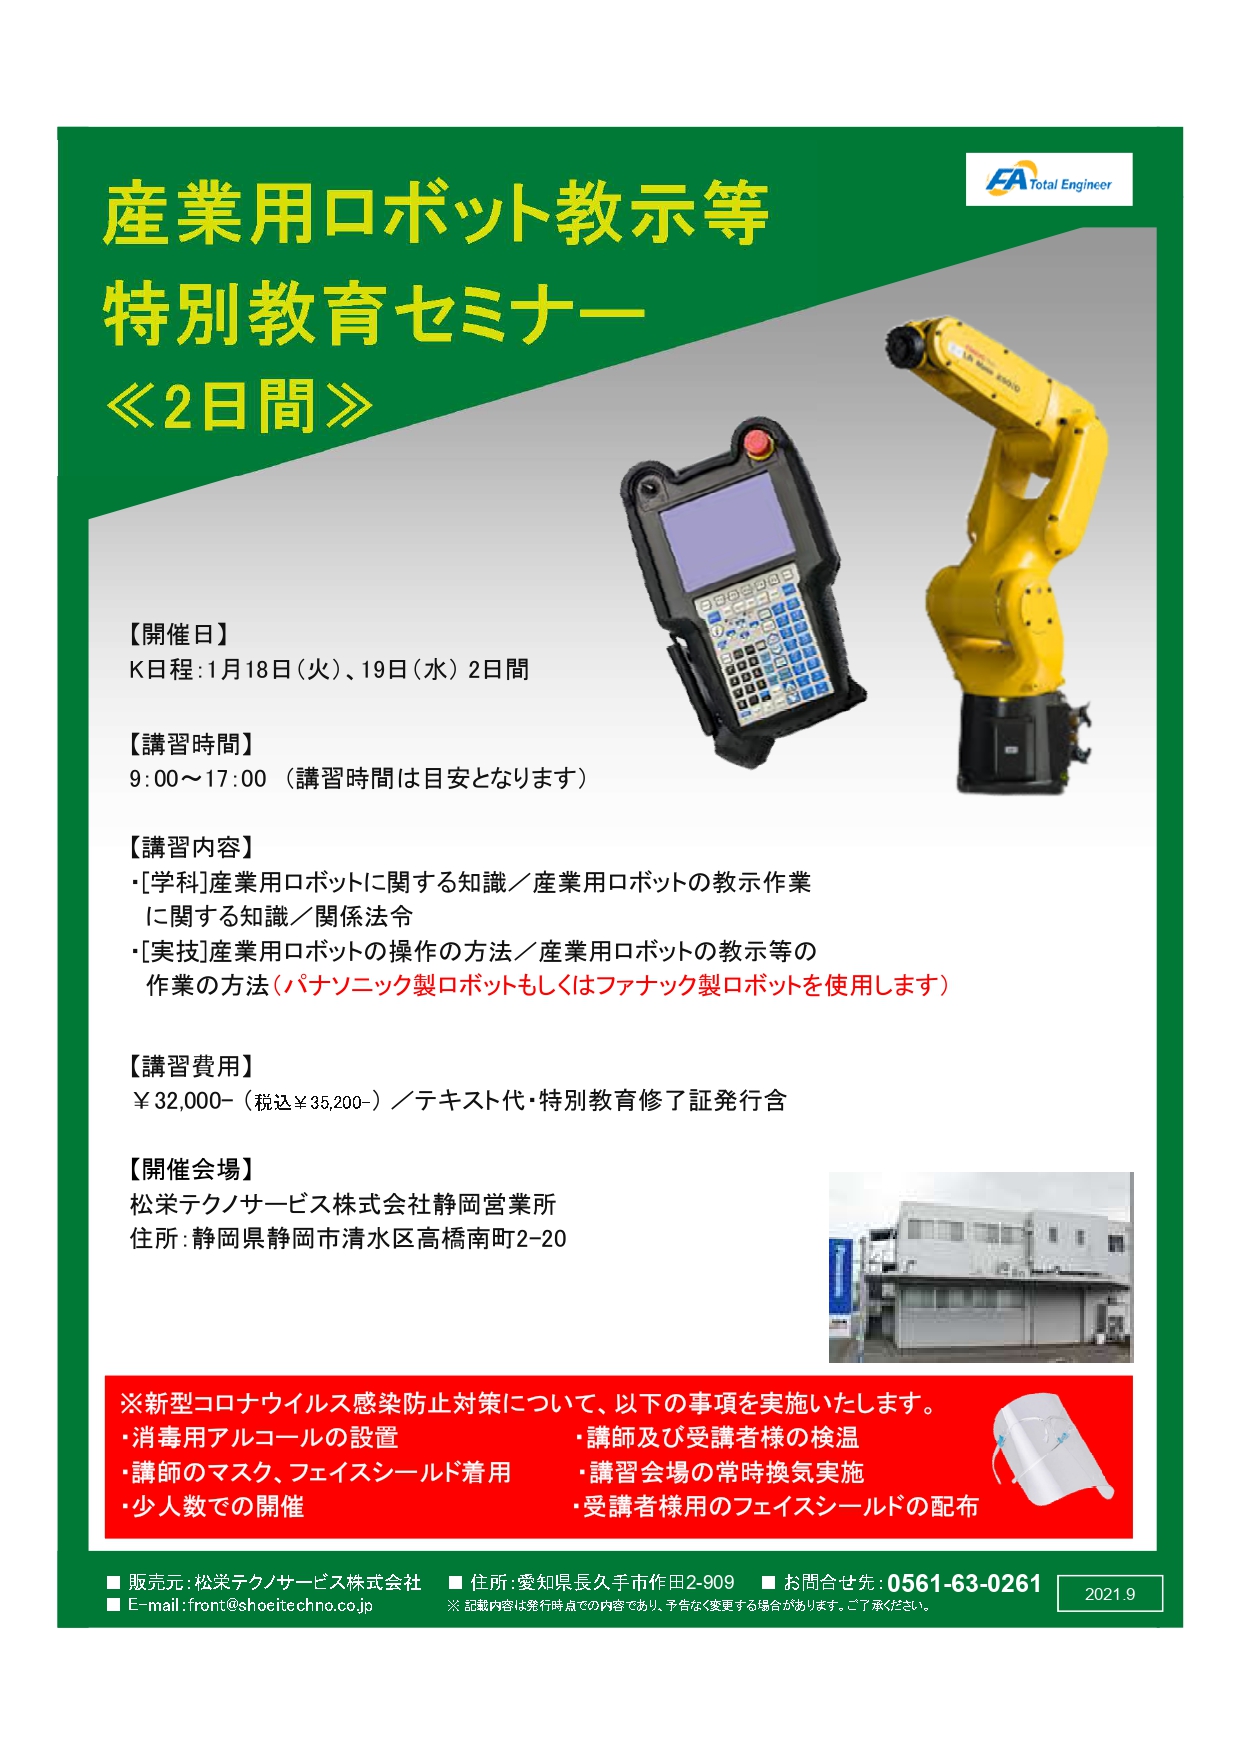 【受付中】産業用ロボット特別教育（教示等）静岡会場開催のお知らせ【2022年1月】